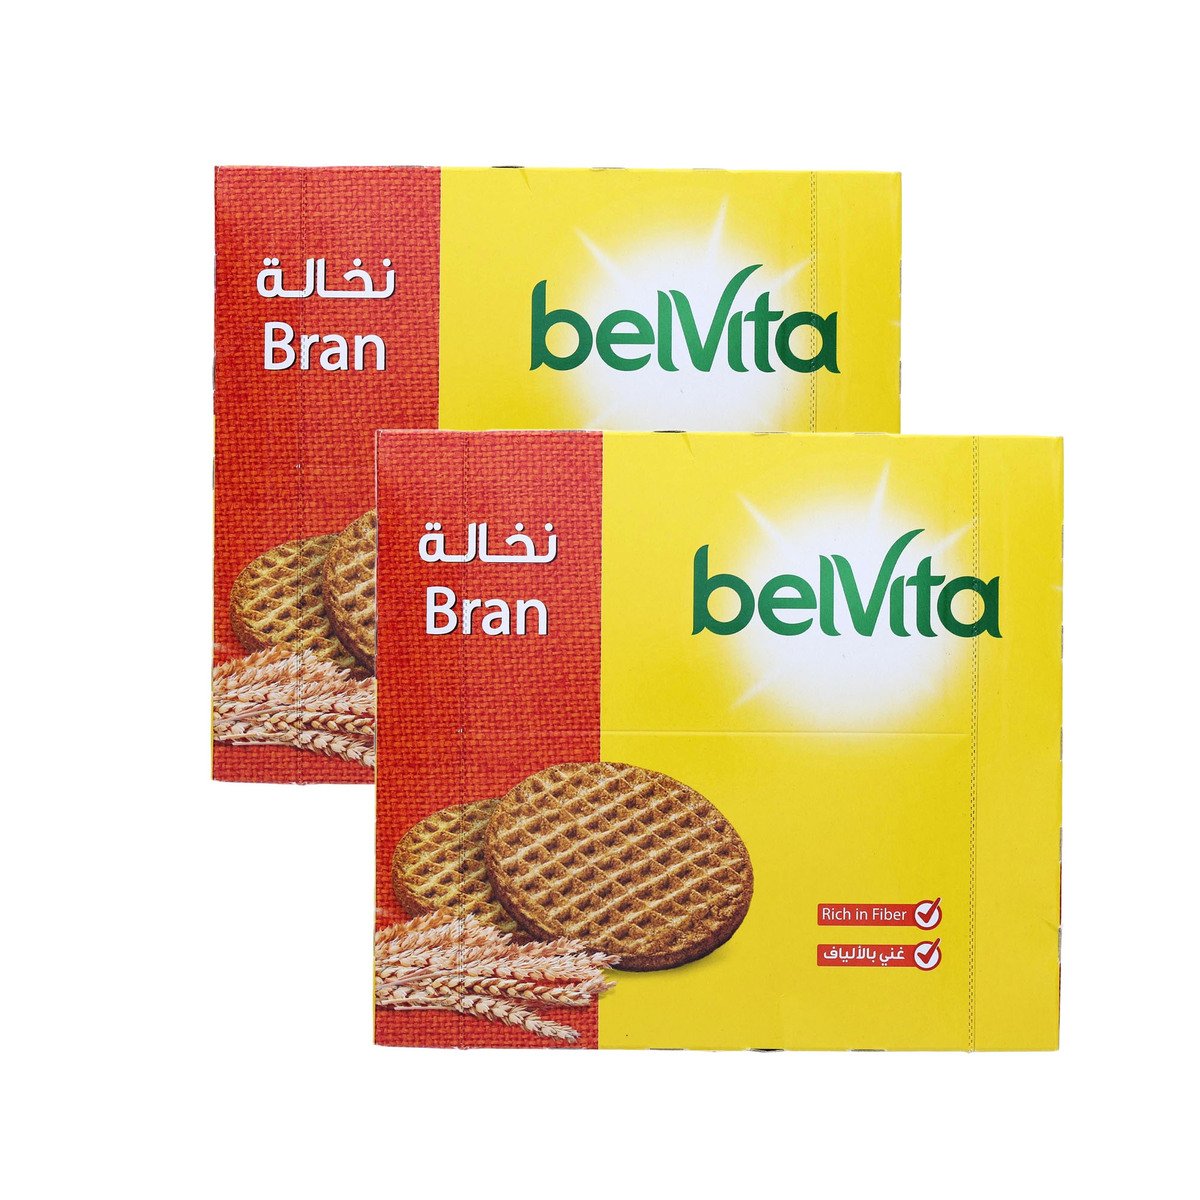 Belvita Bran Biscuit Value Pack 8 x 56 g 2 pkt